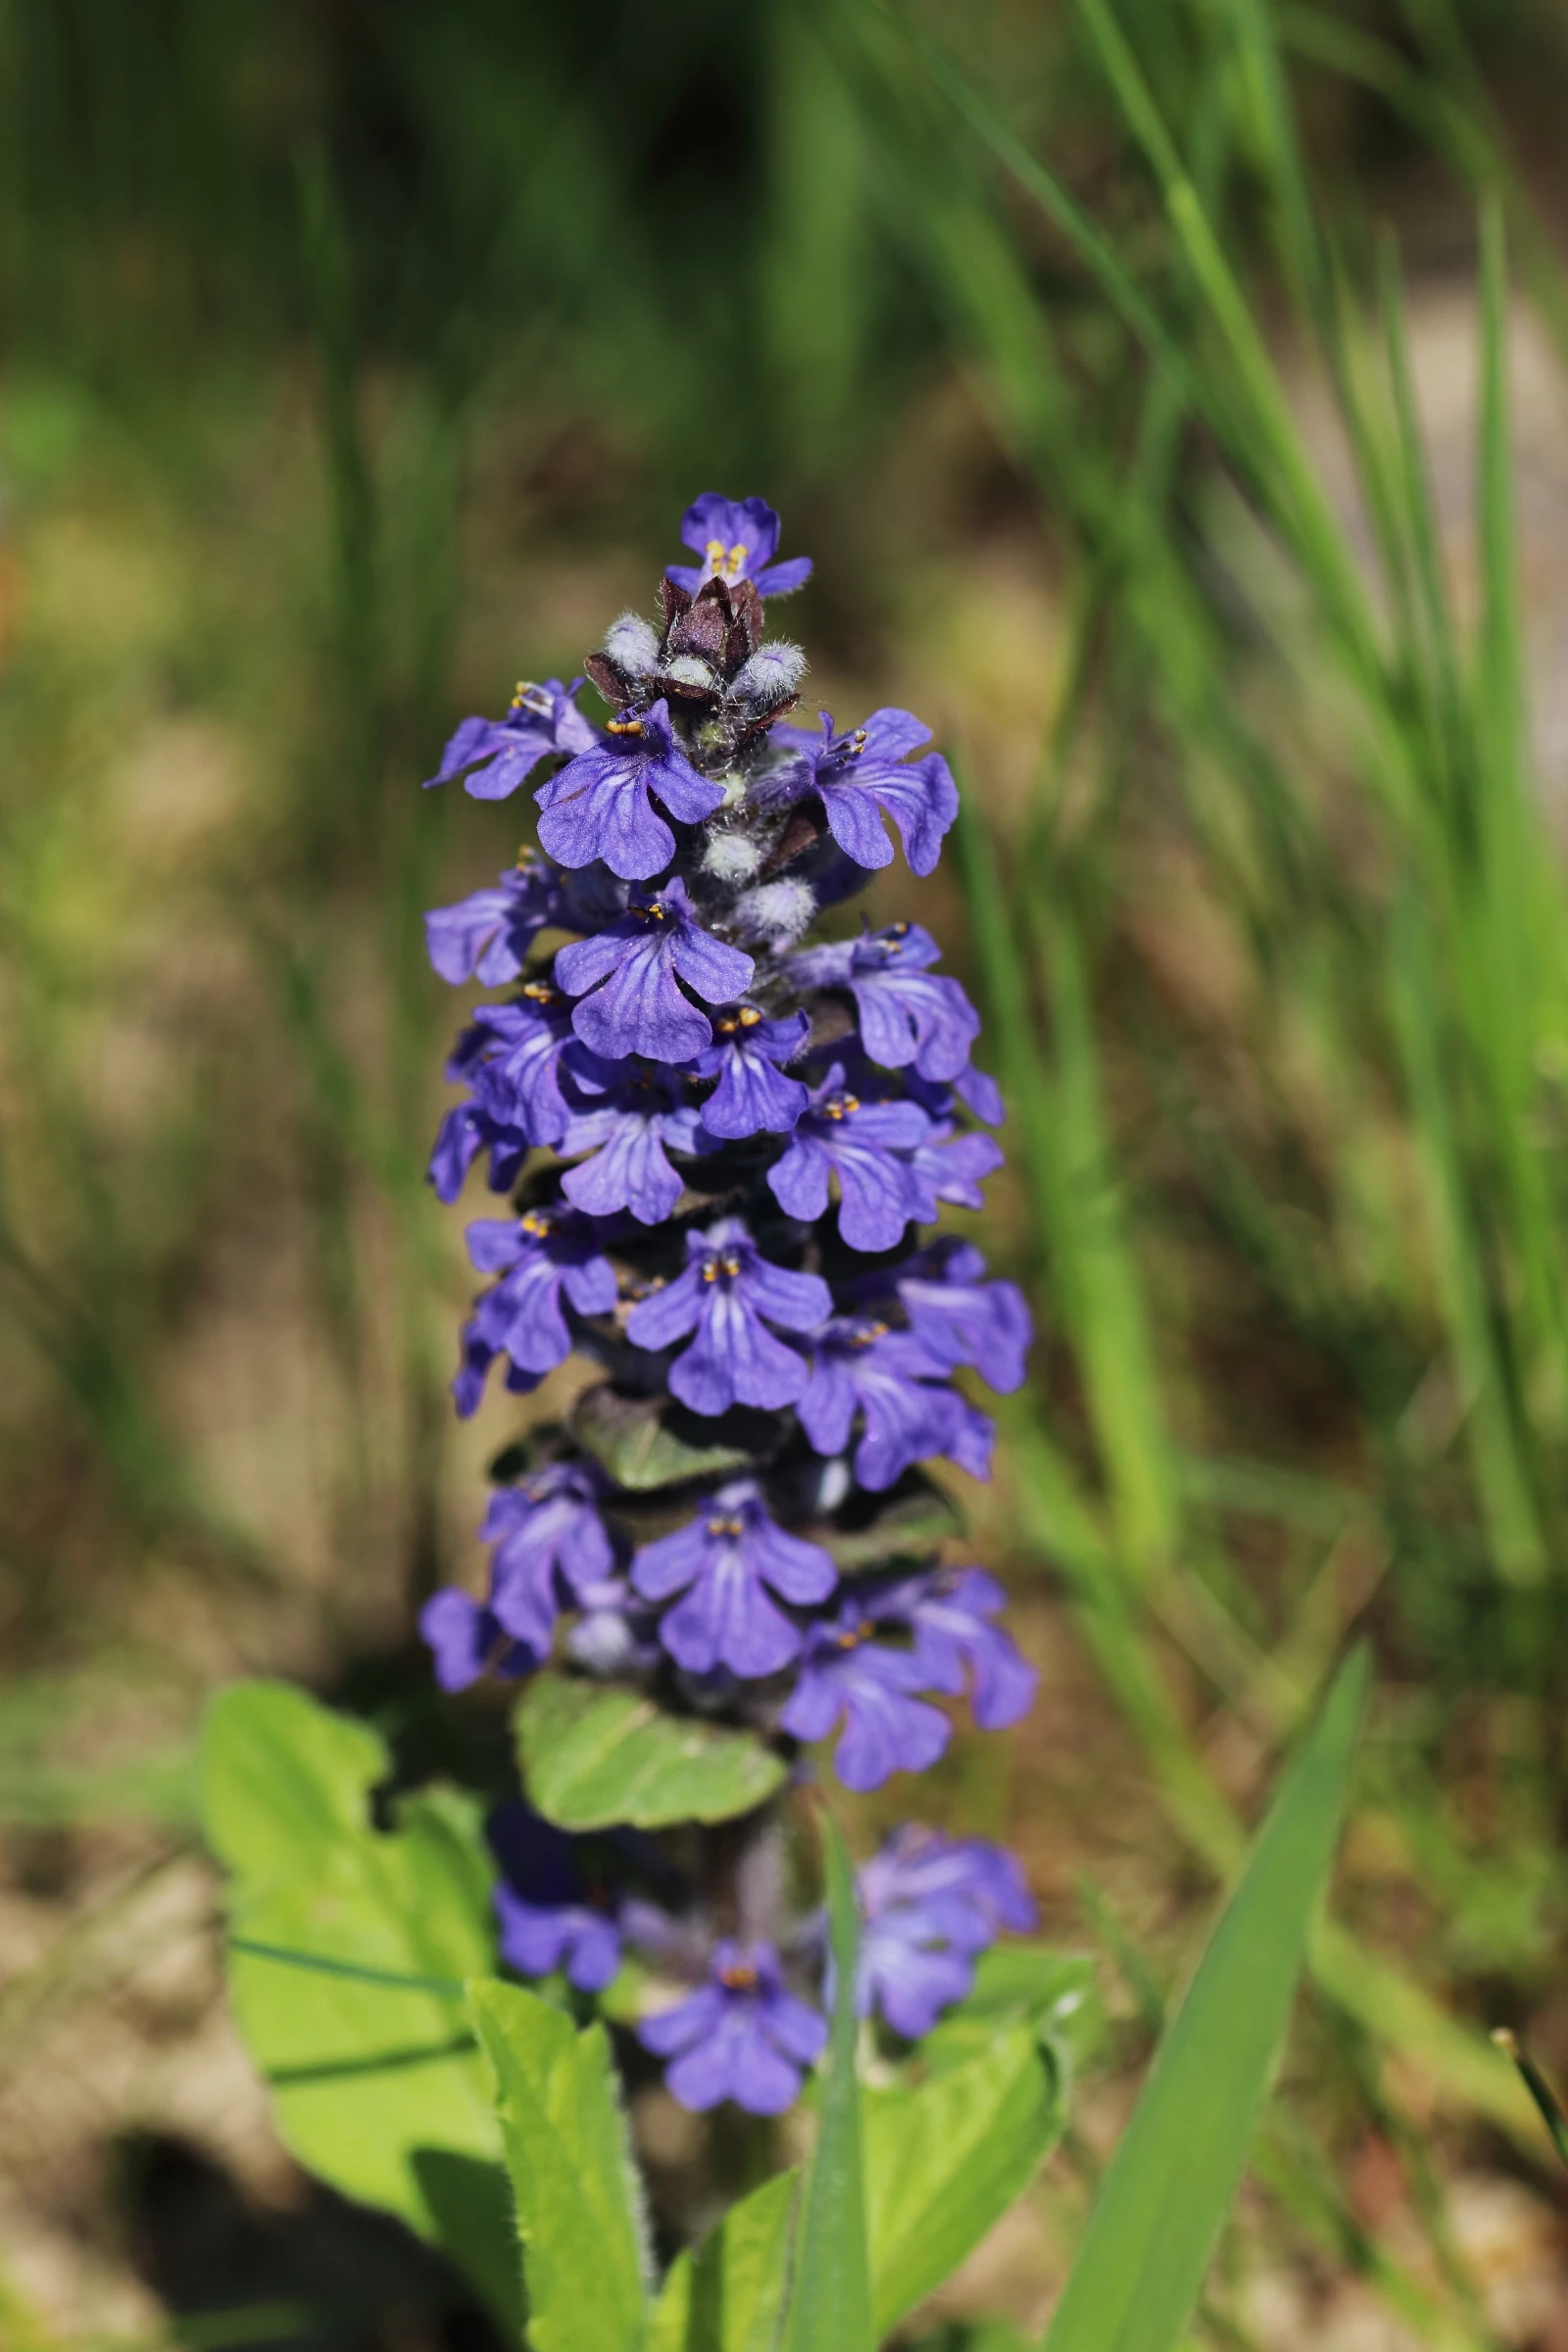 Kriechender Günsel - aufrechter Blütenstand mit einer Vielzahl von zygomorphen, blau gefärbten Blüten. Aus den Blüten stehen die gelben Staubblätter heraus. 